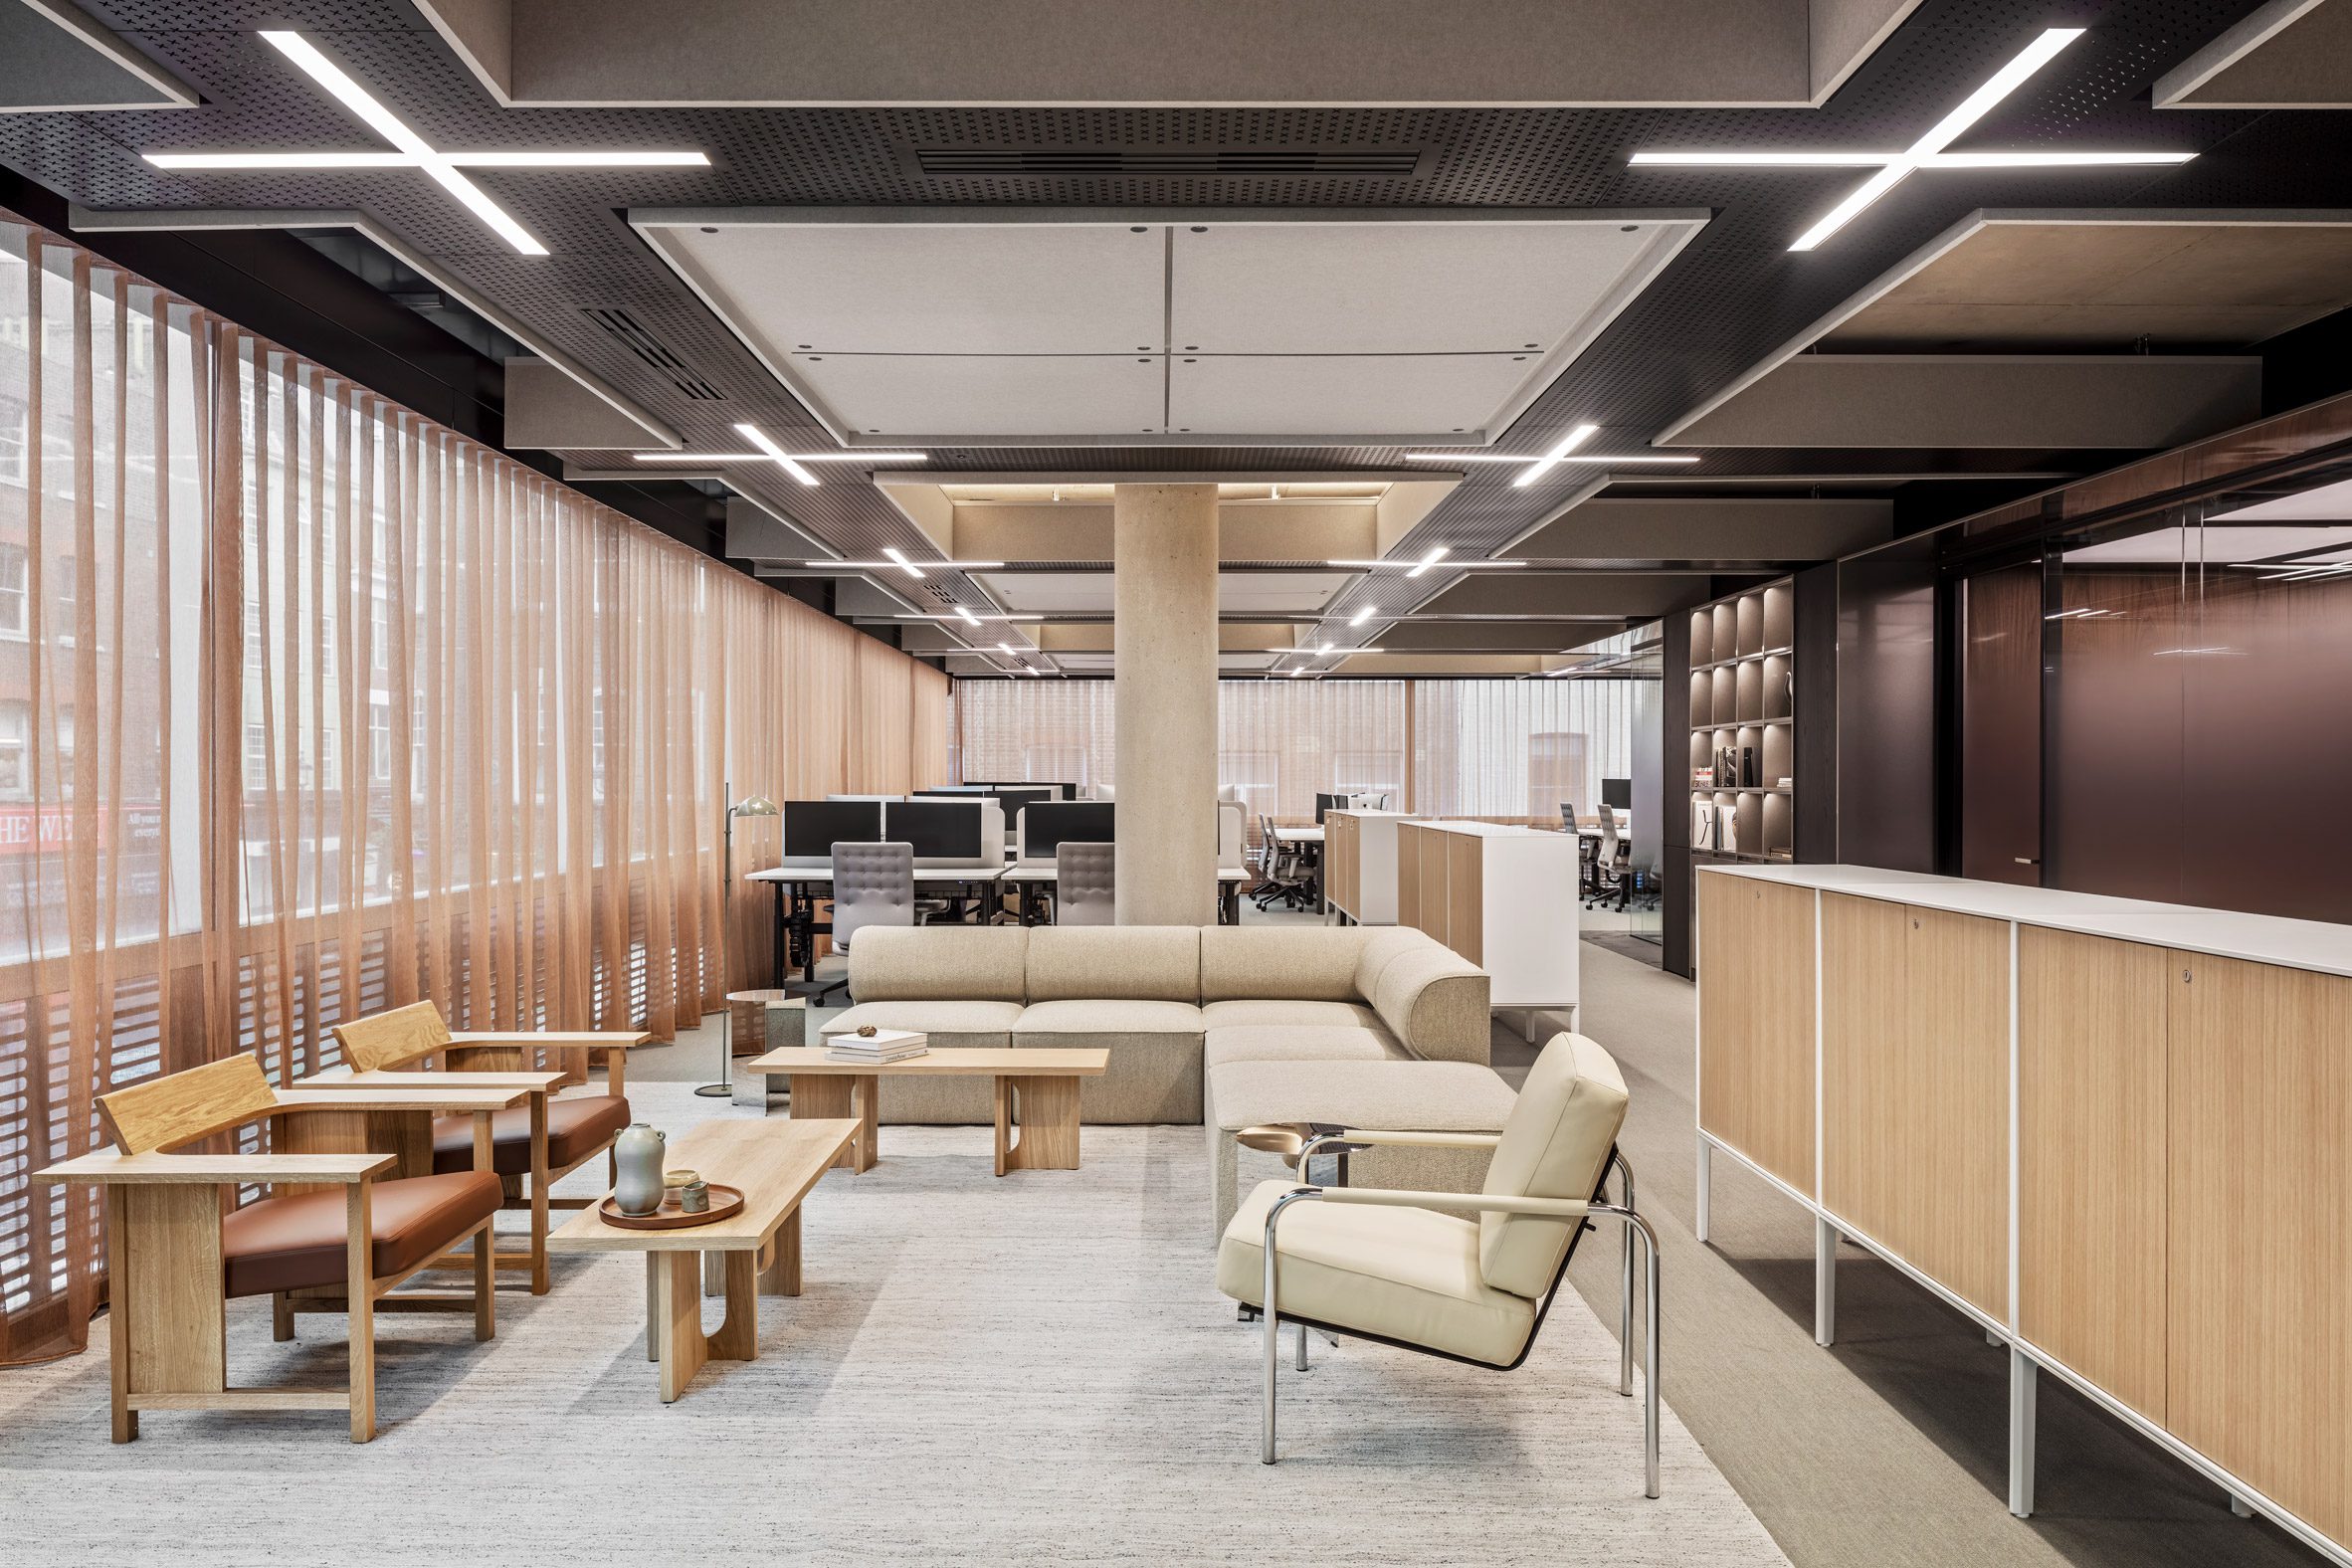 加密货币公司Copper的总部旨在“提供一种保证感”|ART-Arrakis | 建筑室内设计的创新与灵感